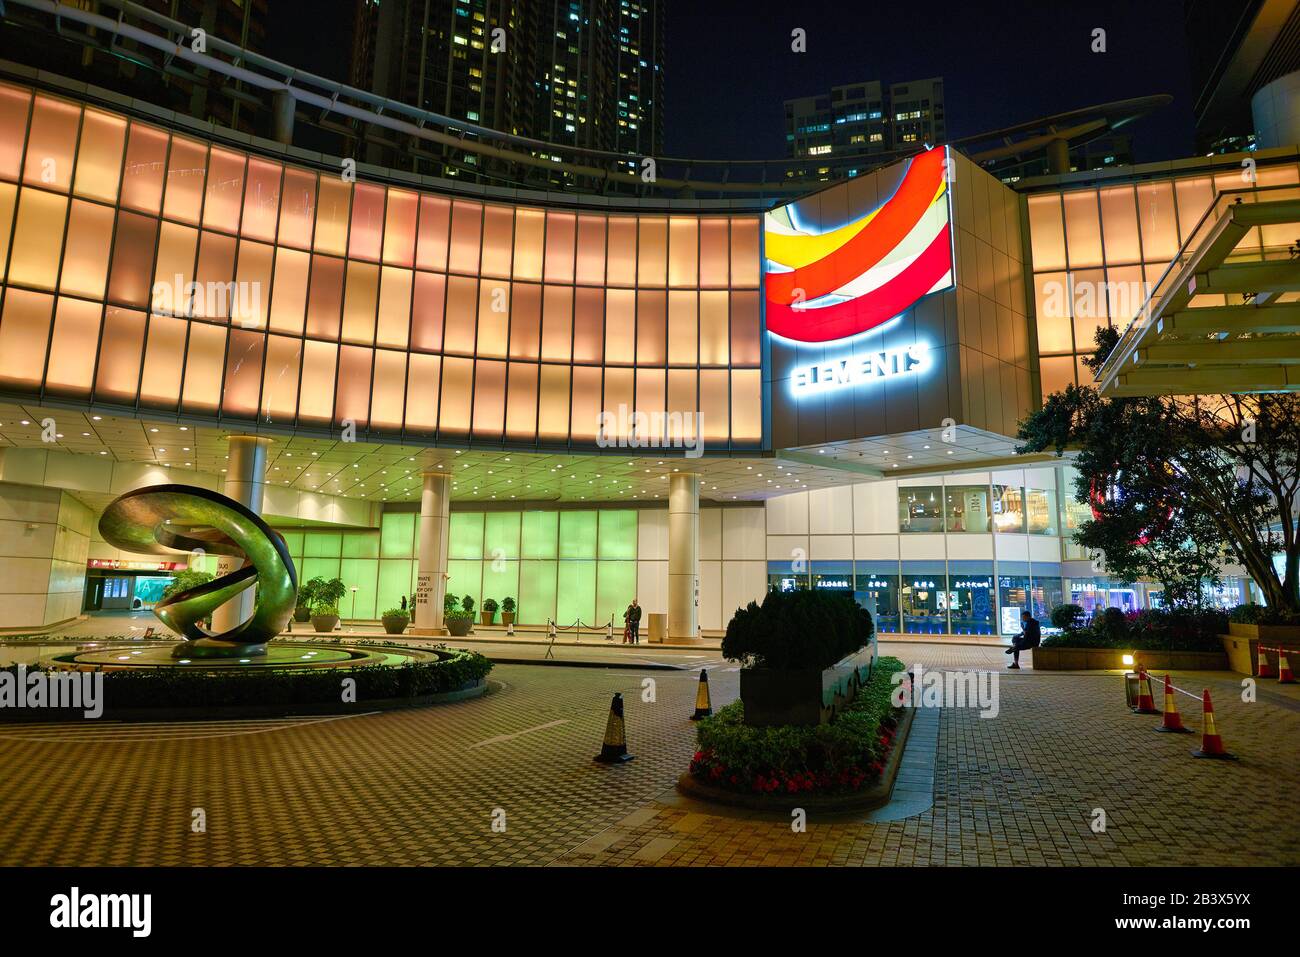 HONG KONG, CHINA - CIRCA JANUARY, 2019: exterior of Elements shopping mall at night. Stock Photo